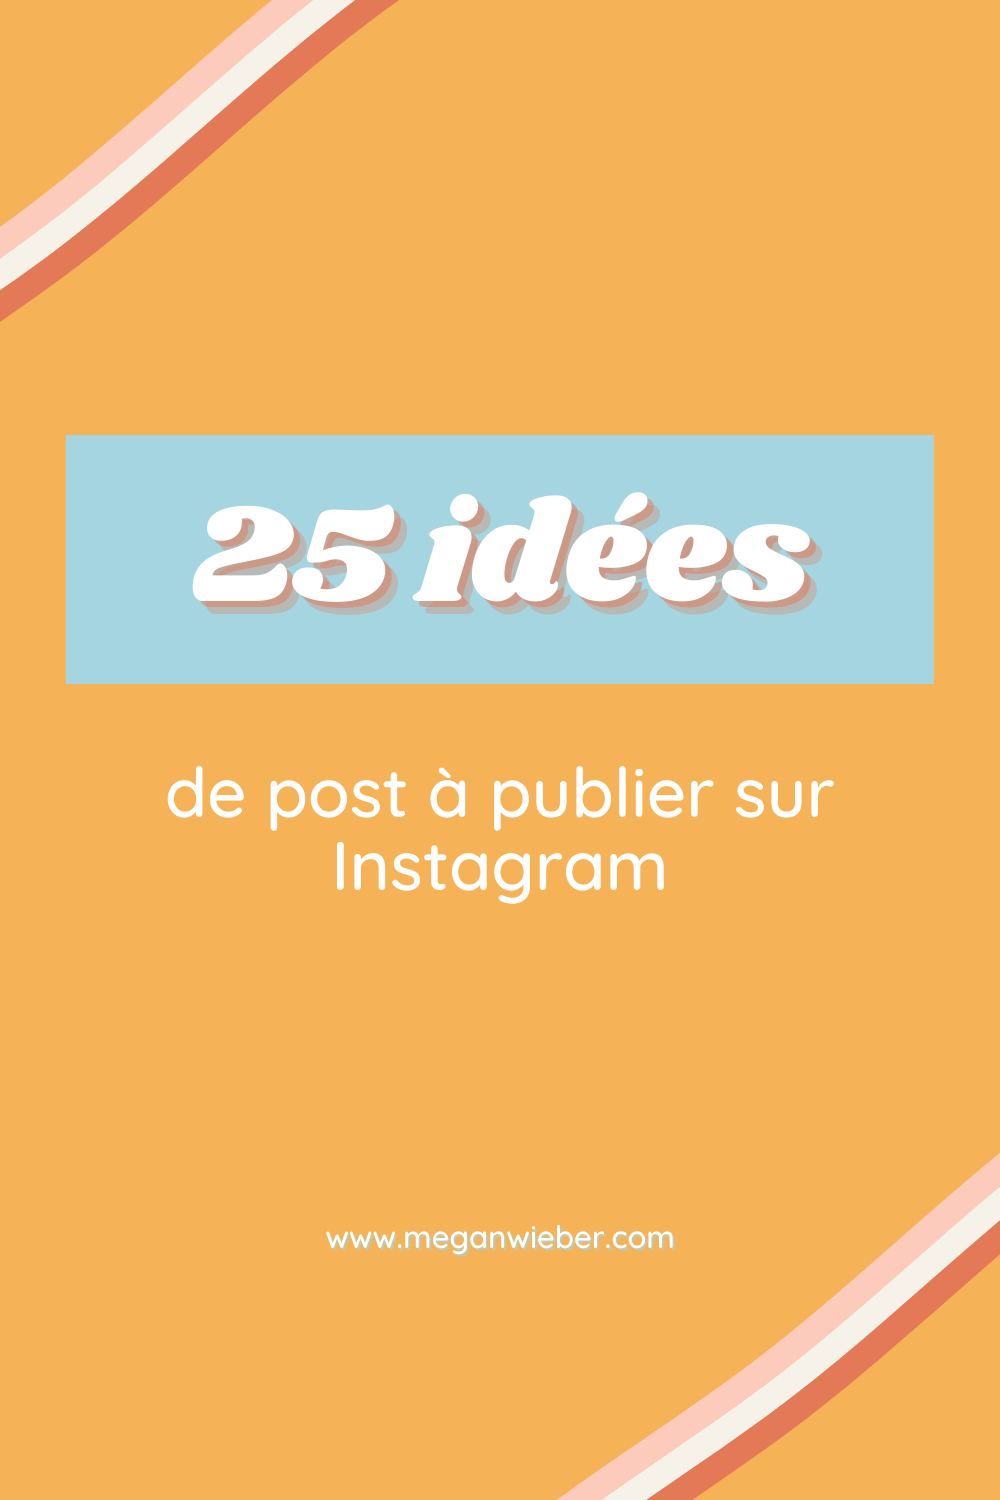 3-25-idees-de-post-a-publier-sur-instagram